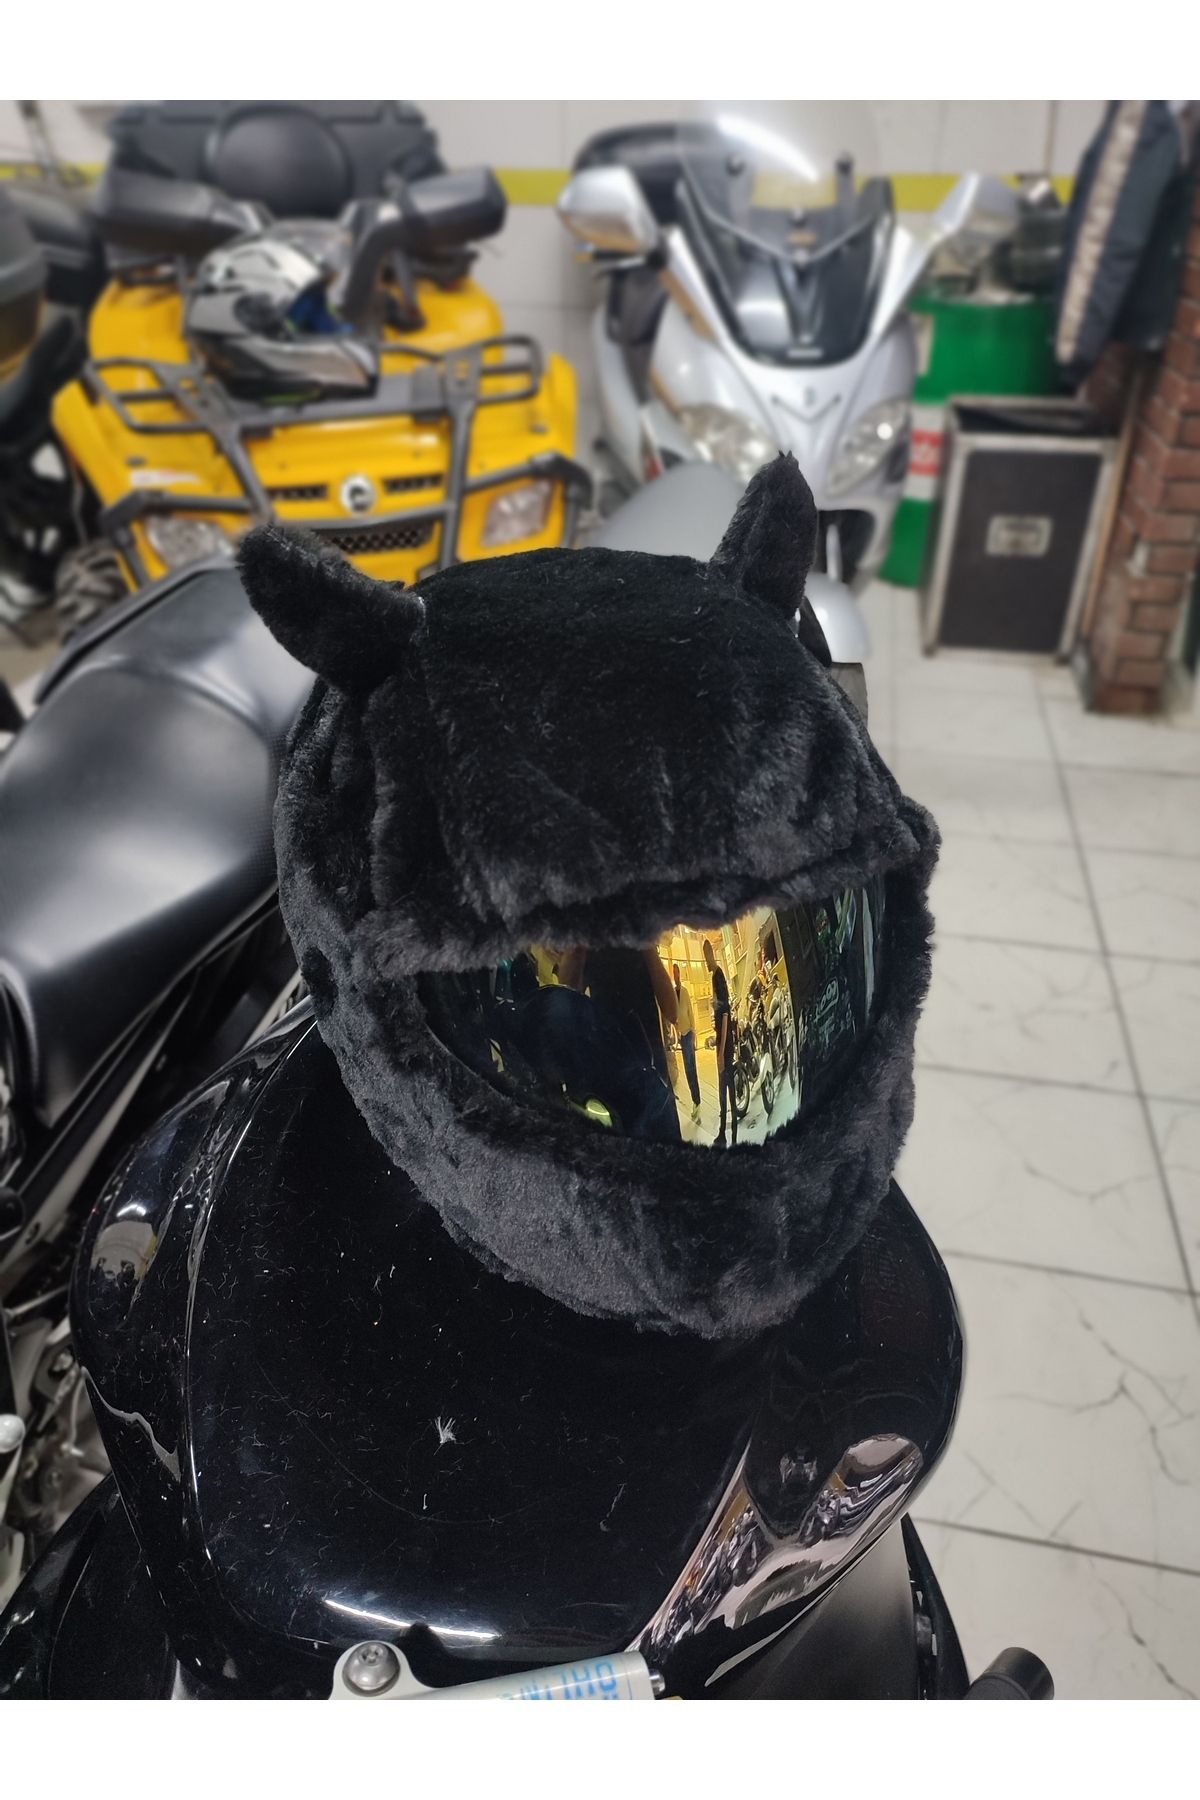 Crystal Palace Peluş kask kılıfı kask motosiklet kask aksesuarları